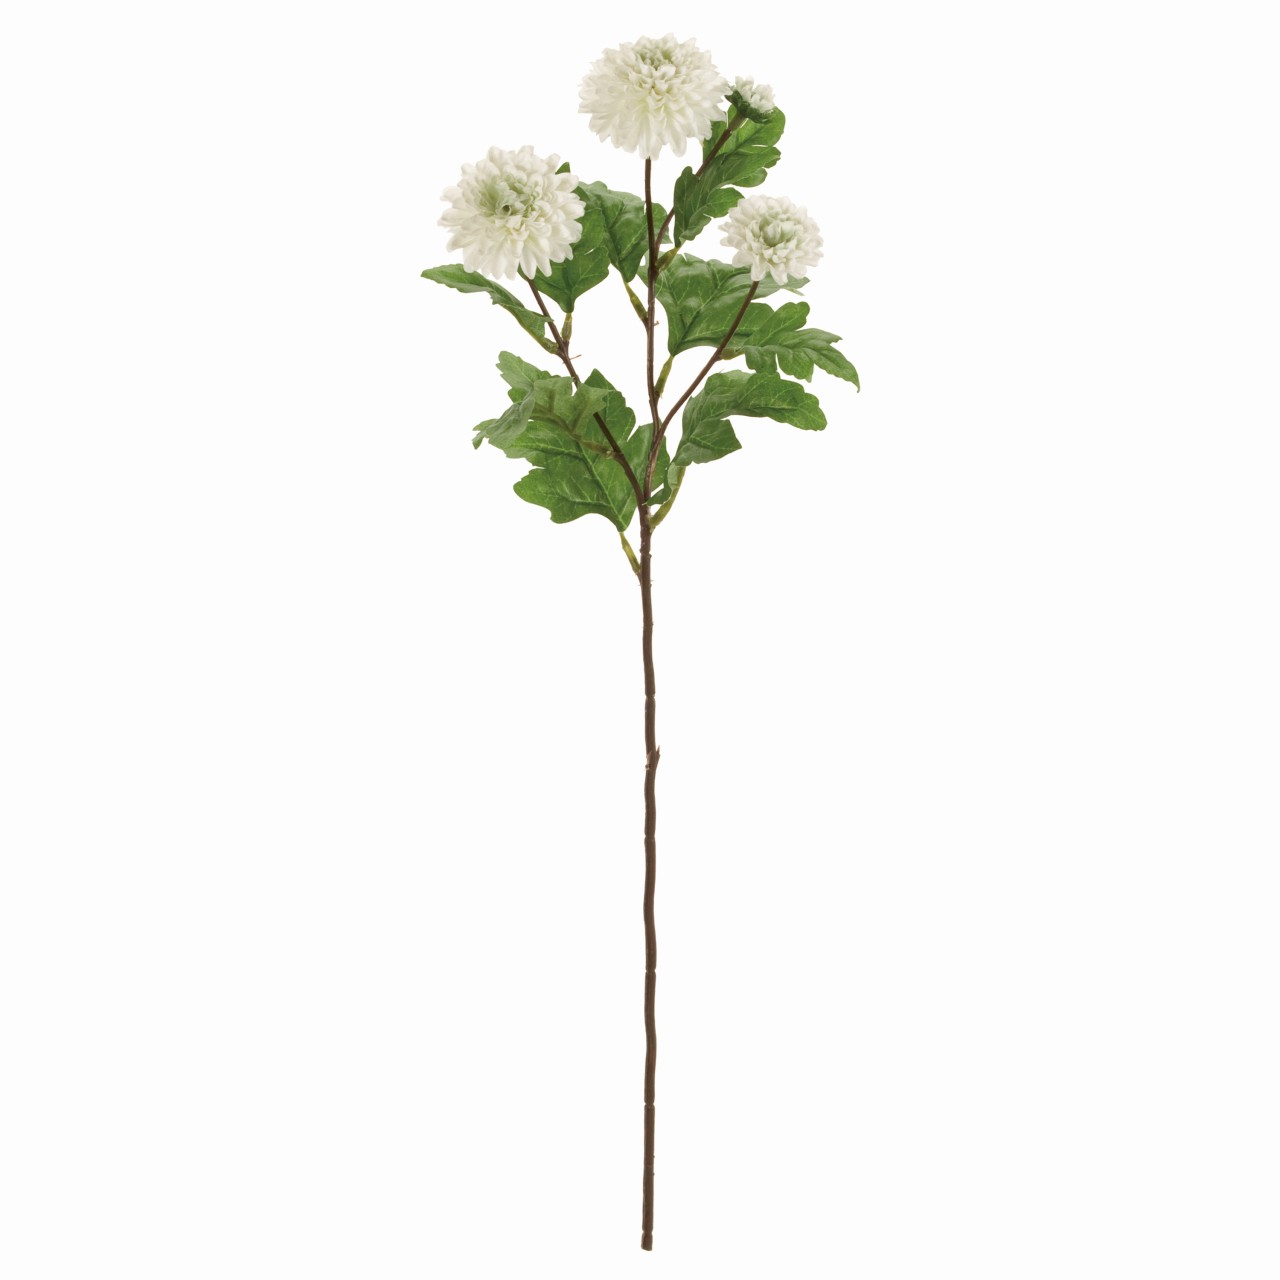 マイフラ 通販 Magiq ロワールマムスプレー ホワイトグリーン アーティフィシャルフラワー 造花 Fm 001 マム 菊 ホワイトグリーン Magiq アーティフィシャルフラワー 造花 全国にmagiq 花器 花資材などをお届けします